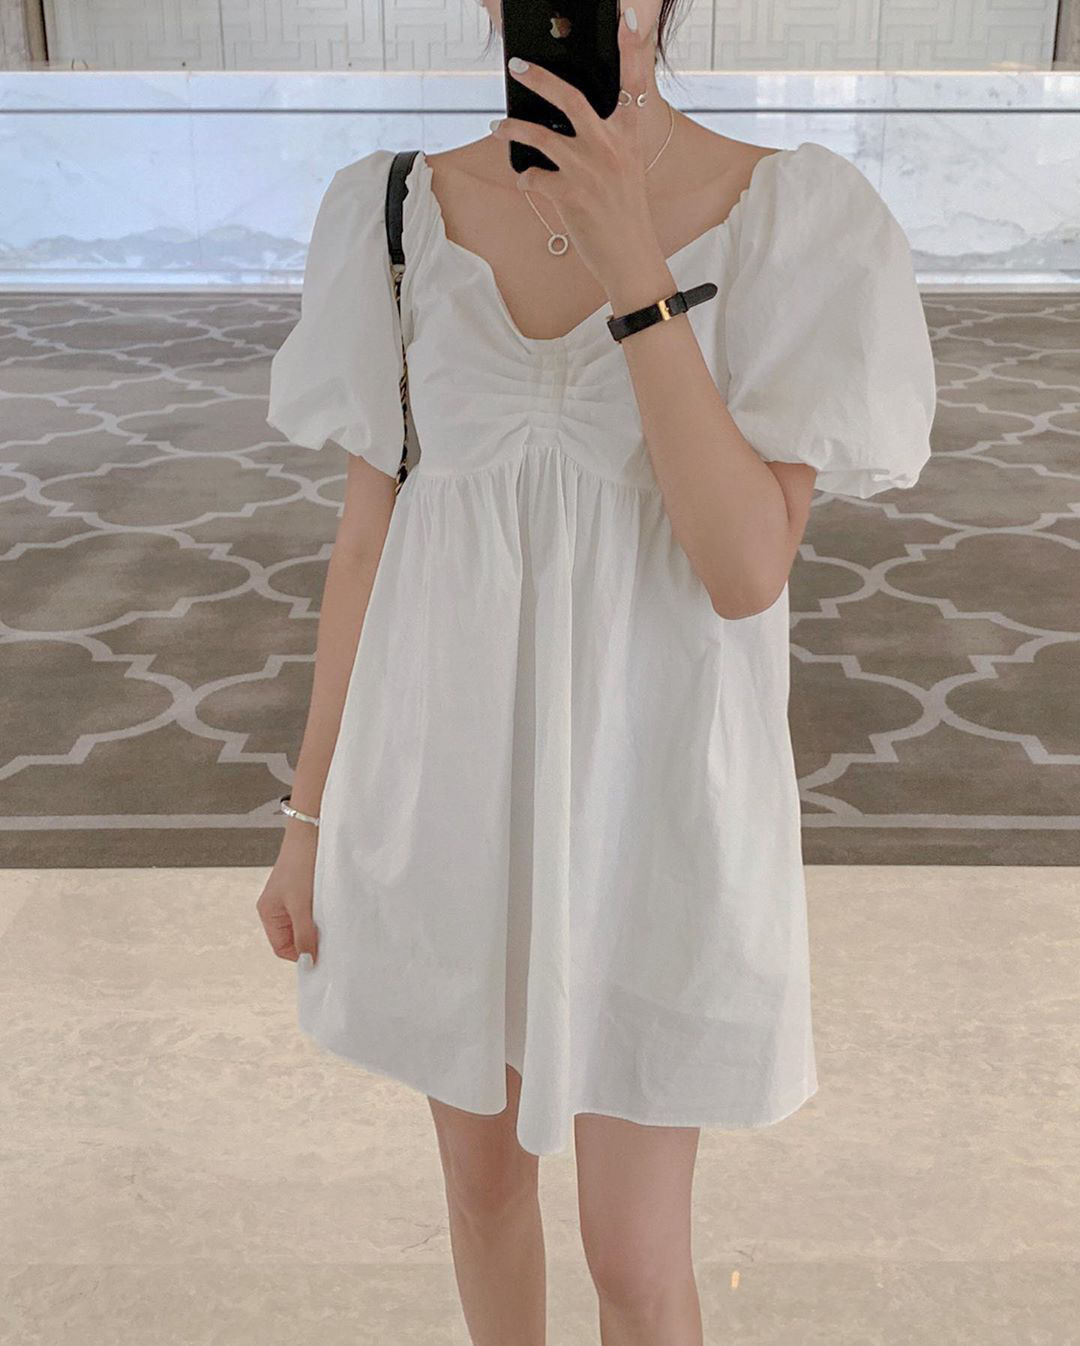 FM Style Đức Phổ Quảng Ngãi - Mẫu váy babydoll caro siêu cute cho các nàng bánh  bèo nhà FM nè Code : 21022219 Liên hệ và ghé thăm cửa hàng: